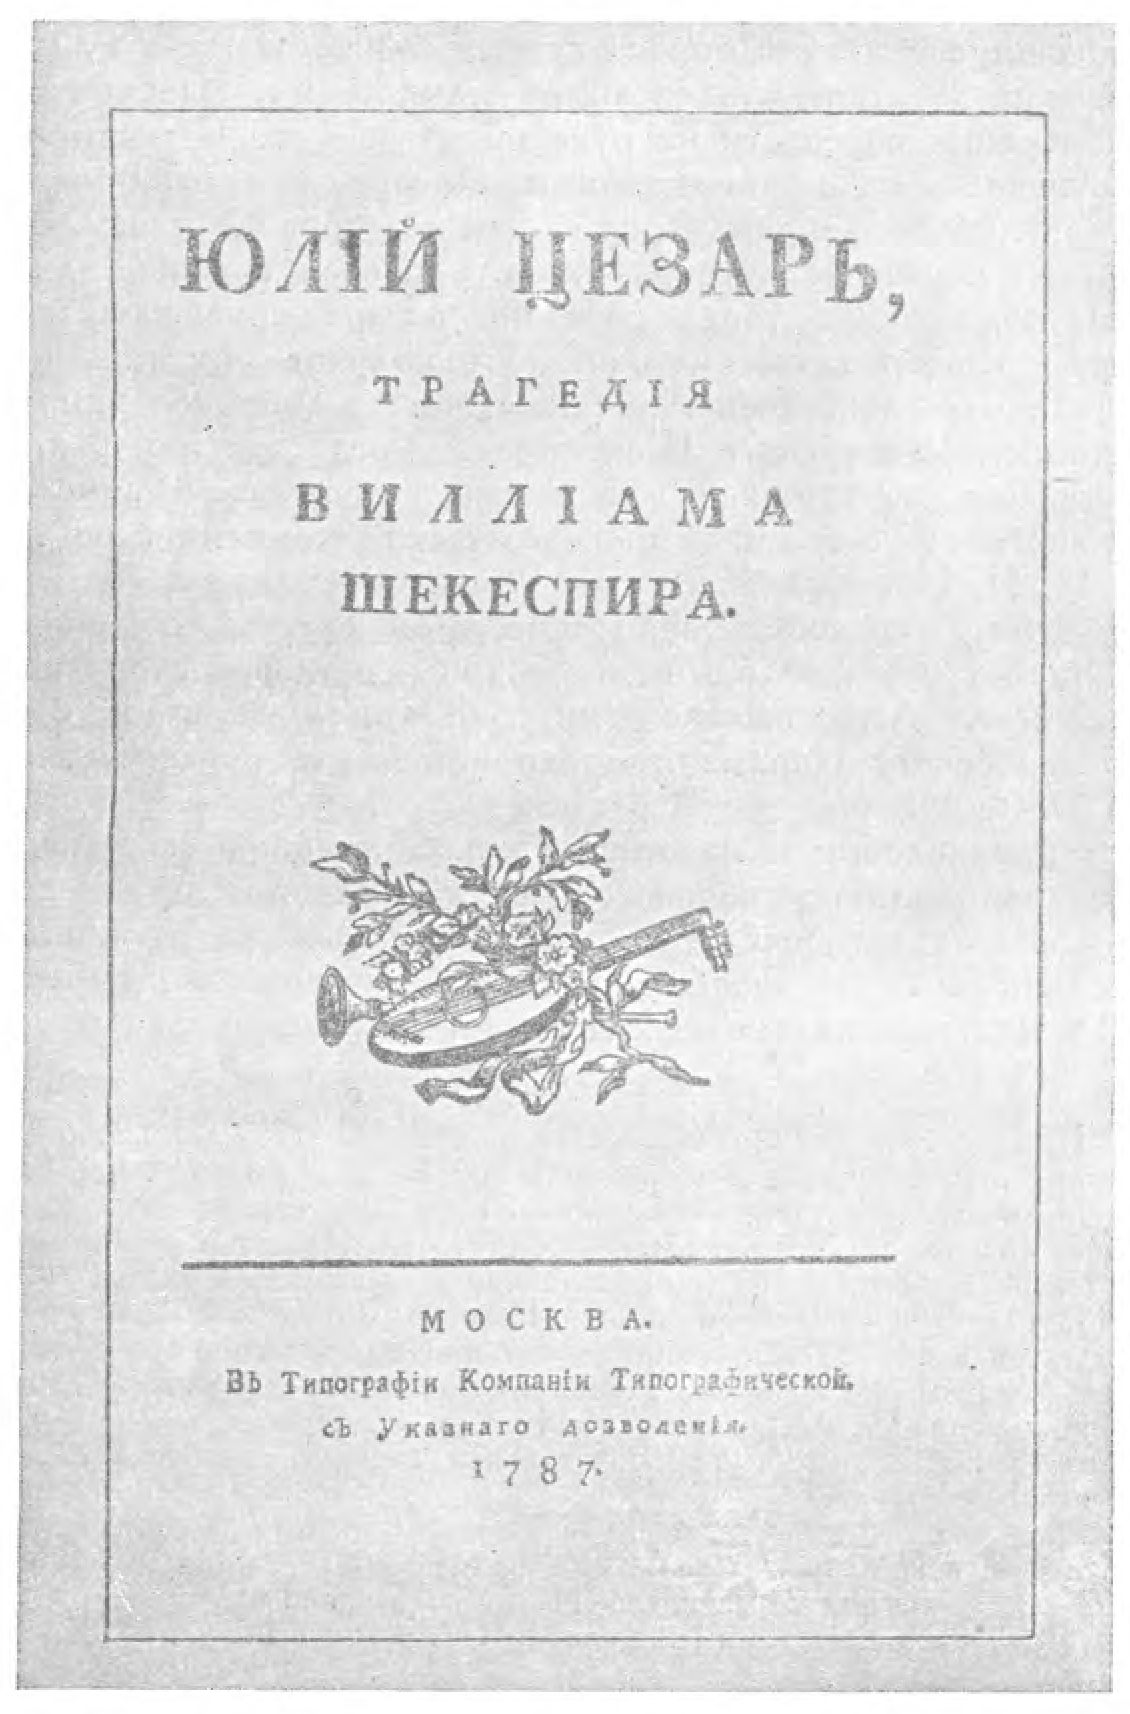 «Юлий Цезарь». Перевод Н.М. Карамзина. Москва, 1787. Титульный лист